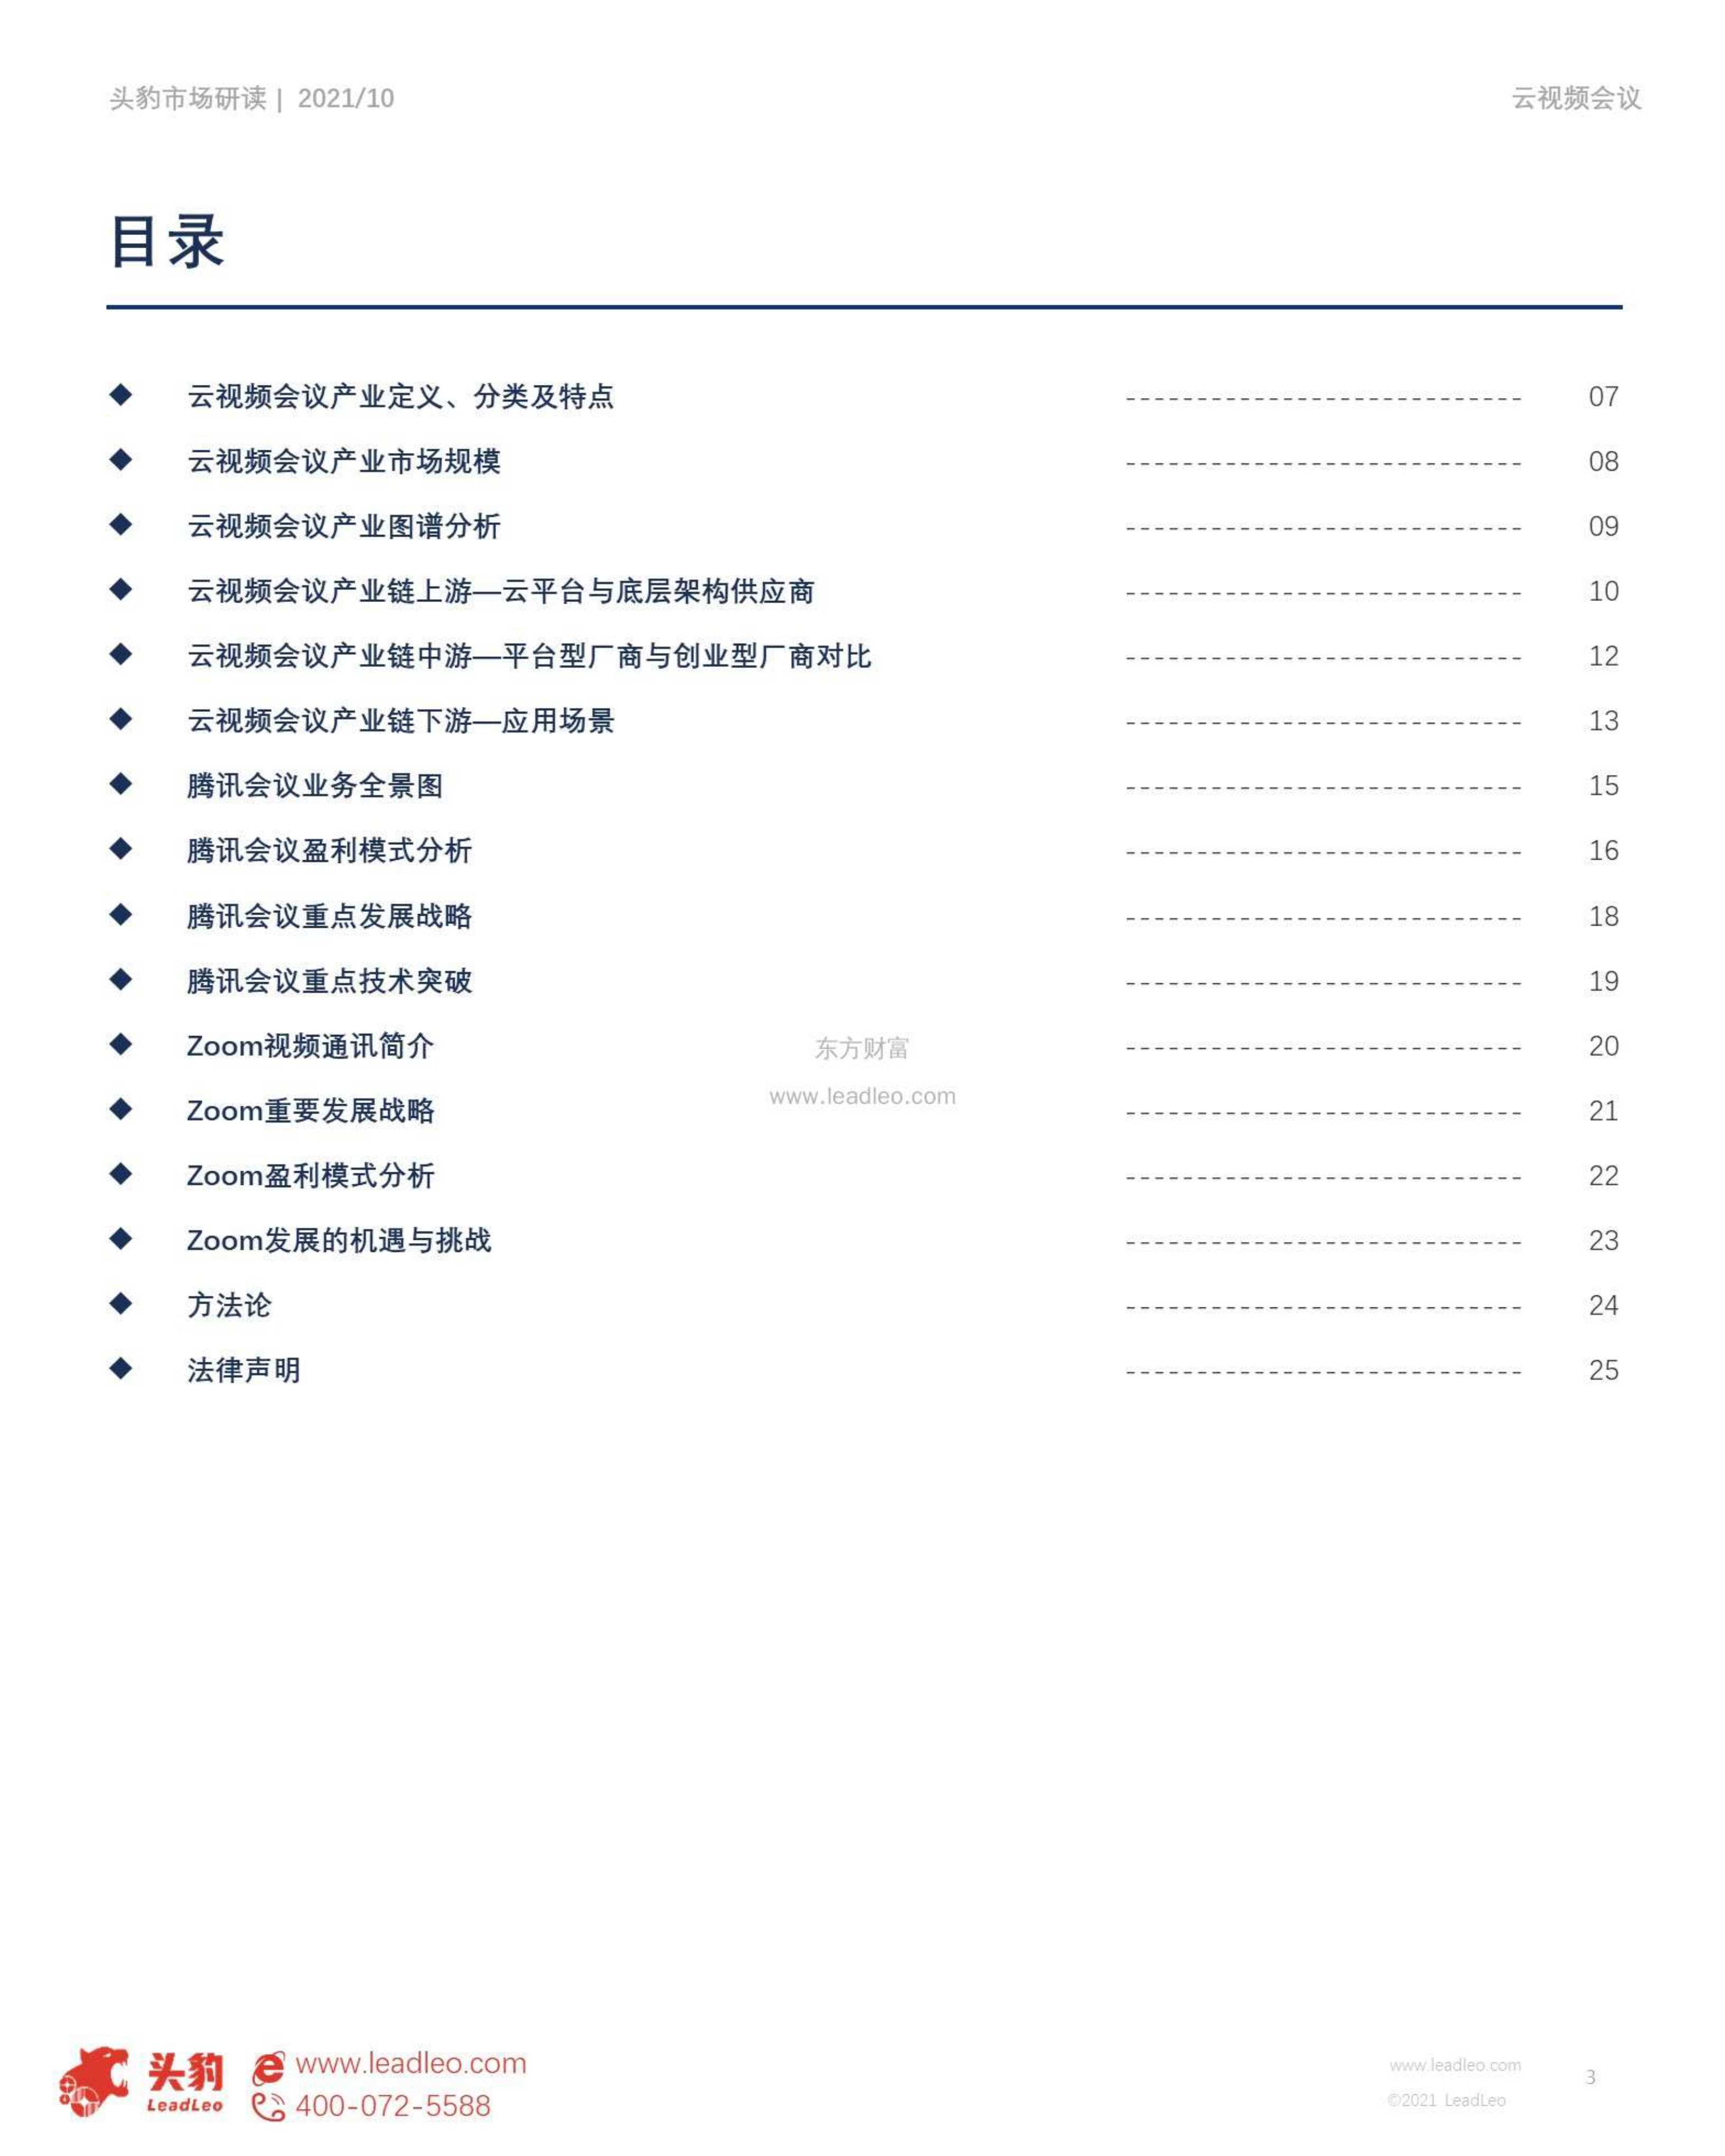 头豹研究院-2021年中国云视频会议行业概览：云视频会议行业的兴起、现状与展望-2021.11-33页